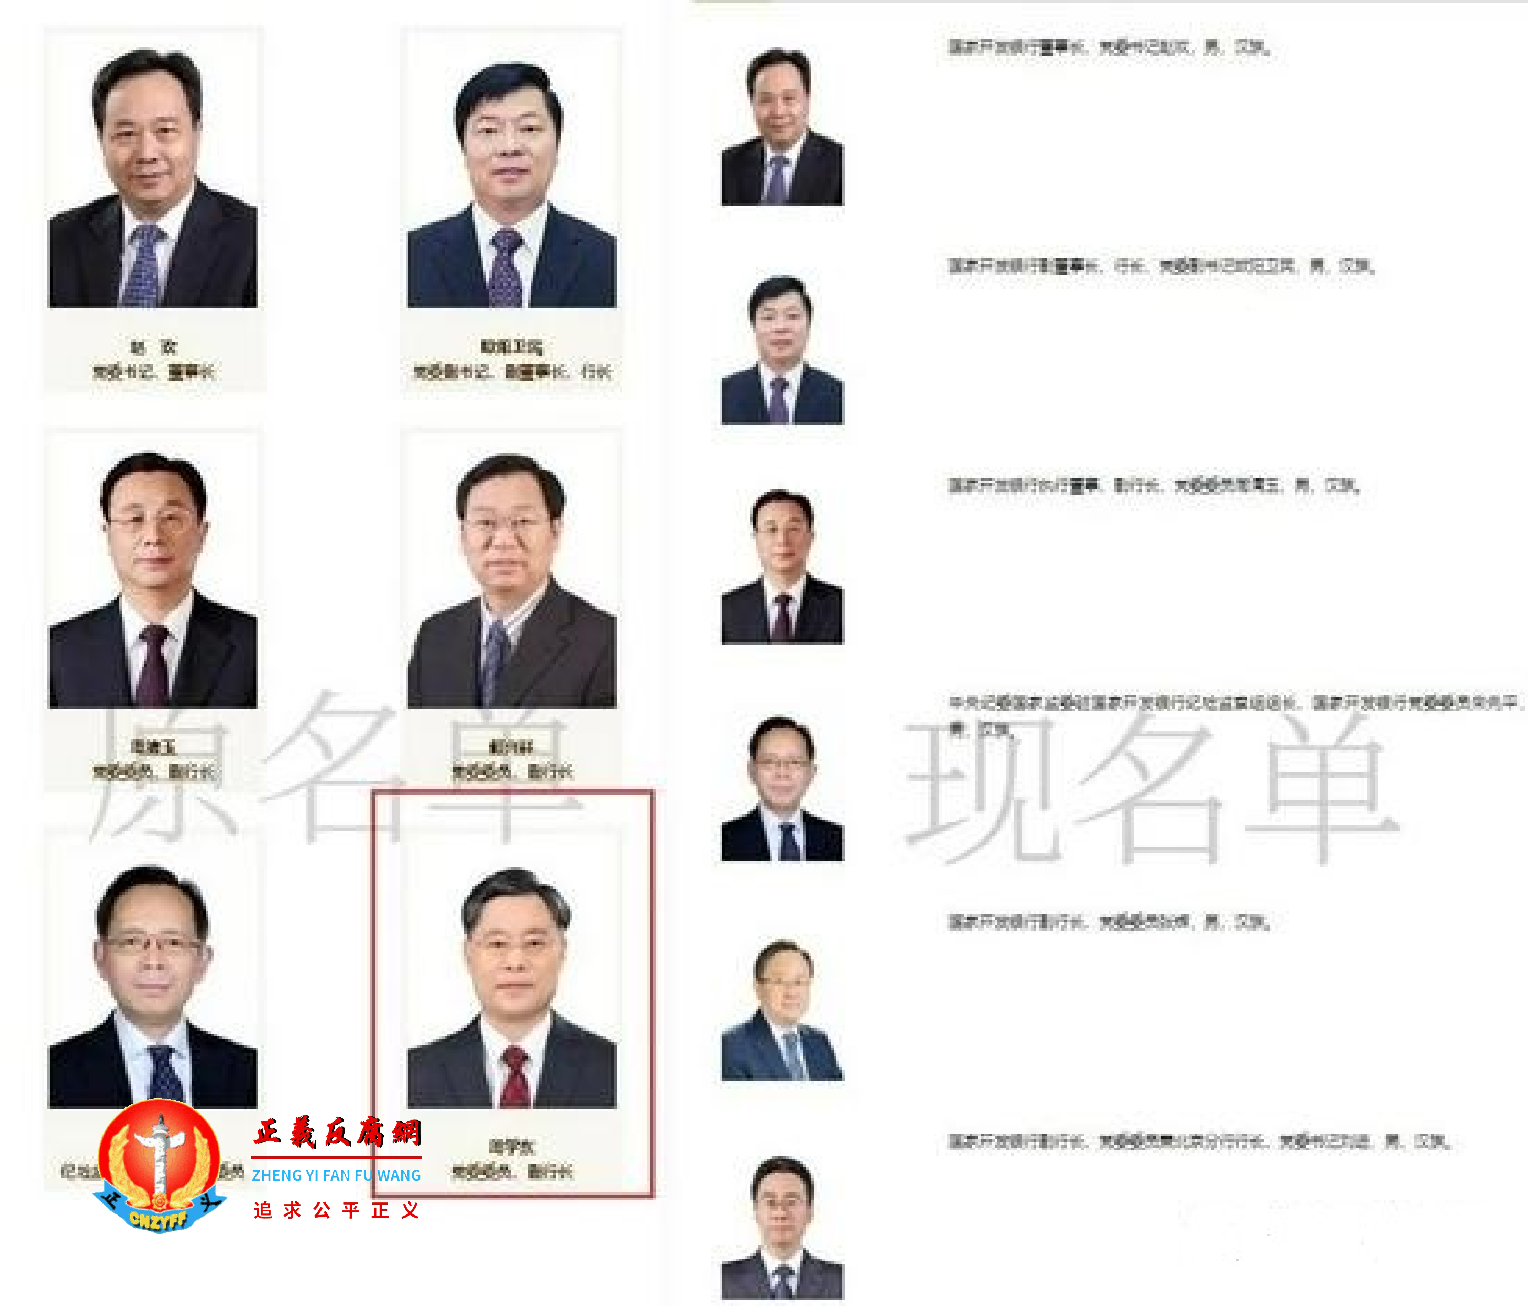 国家开发银行官网“领导班子”一栏中，已经没有了副行长周学东的名字。.png